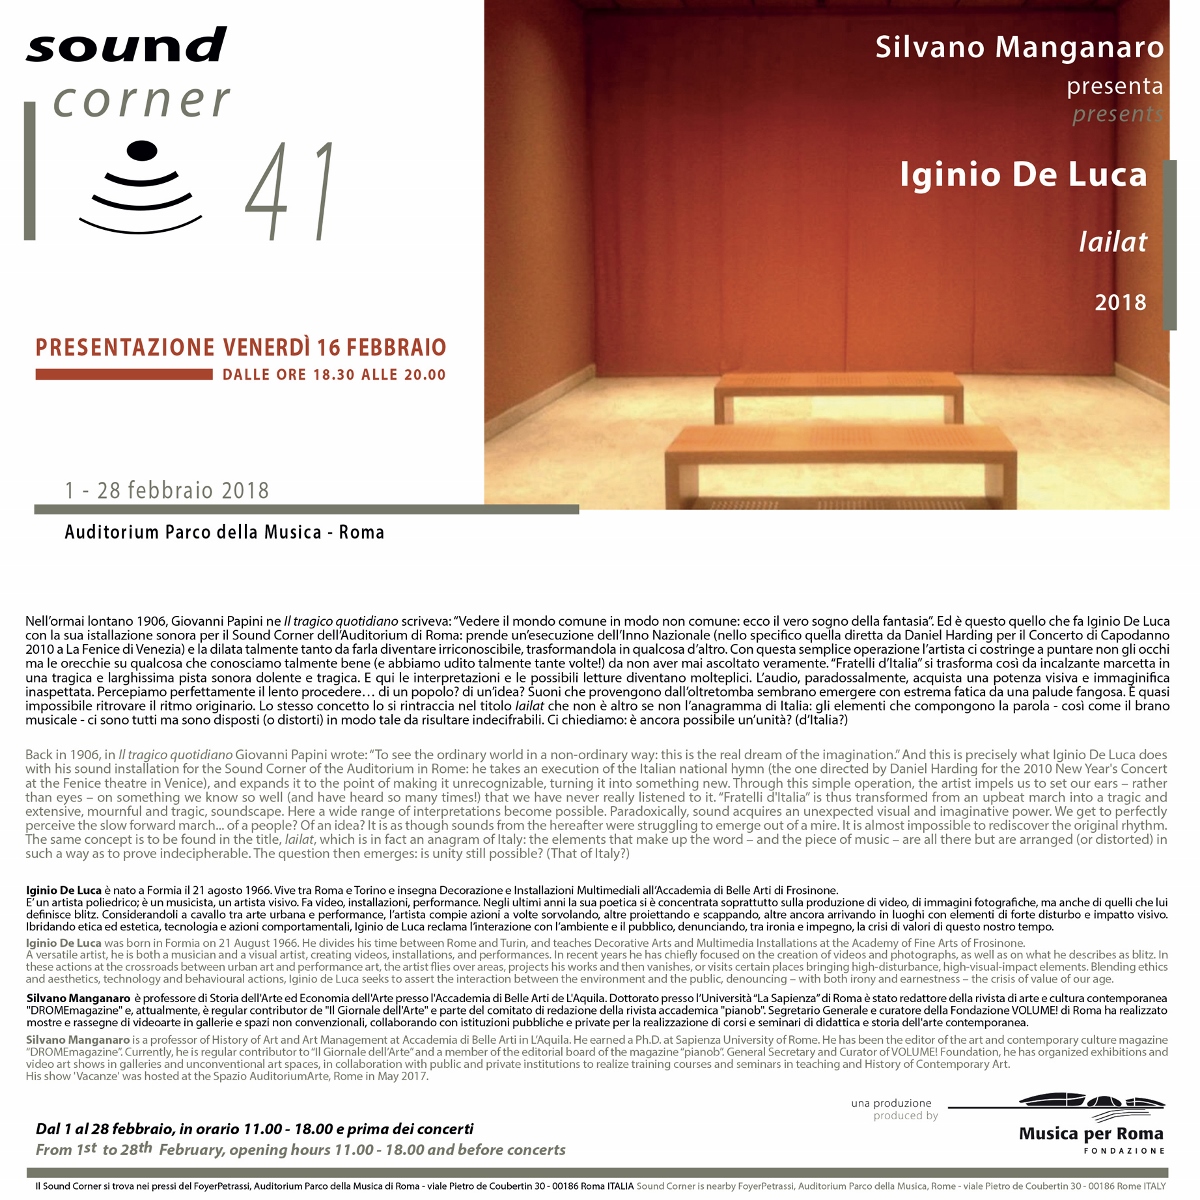 Sound Corner - Iginio De Luca